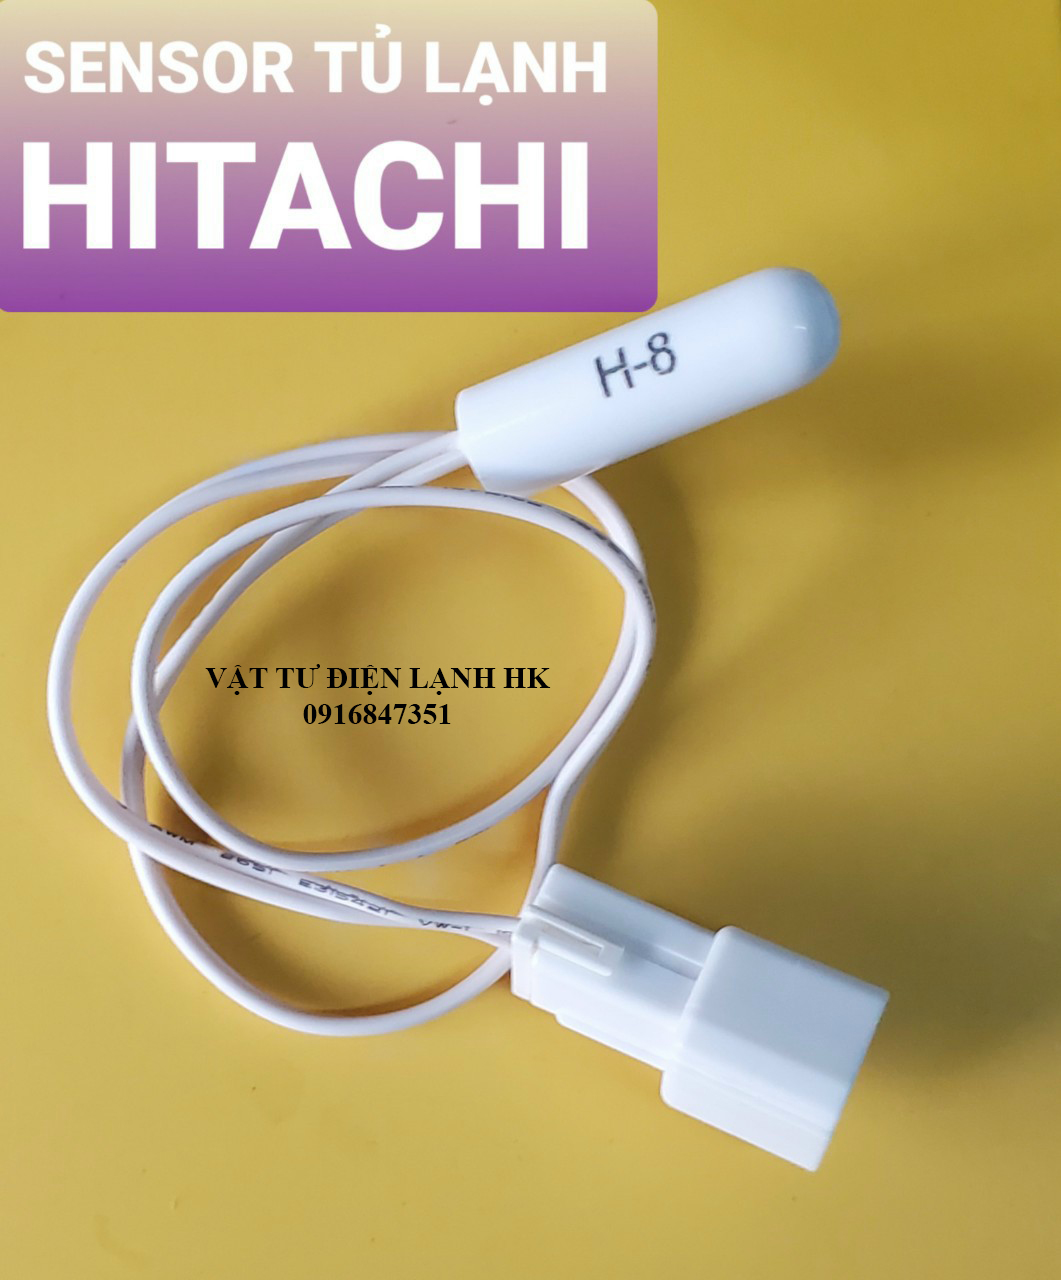 Sensor tủ lạnh HITACHI H-8 - Đầu dò cảm biến nhiệt độ tl Hi H8